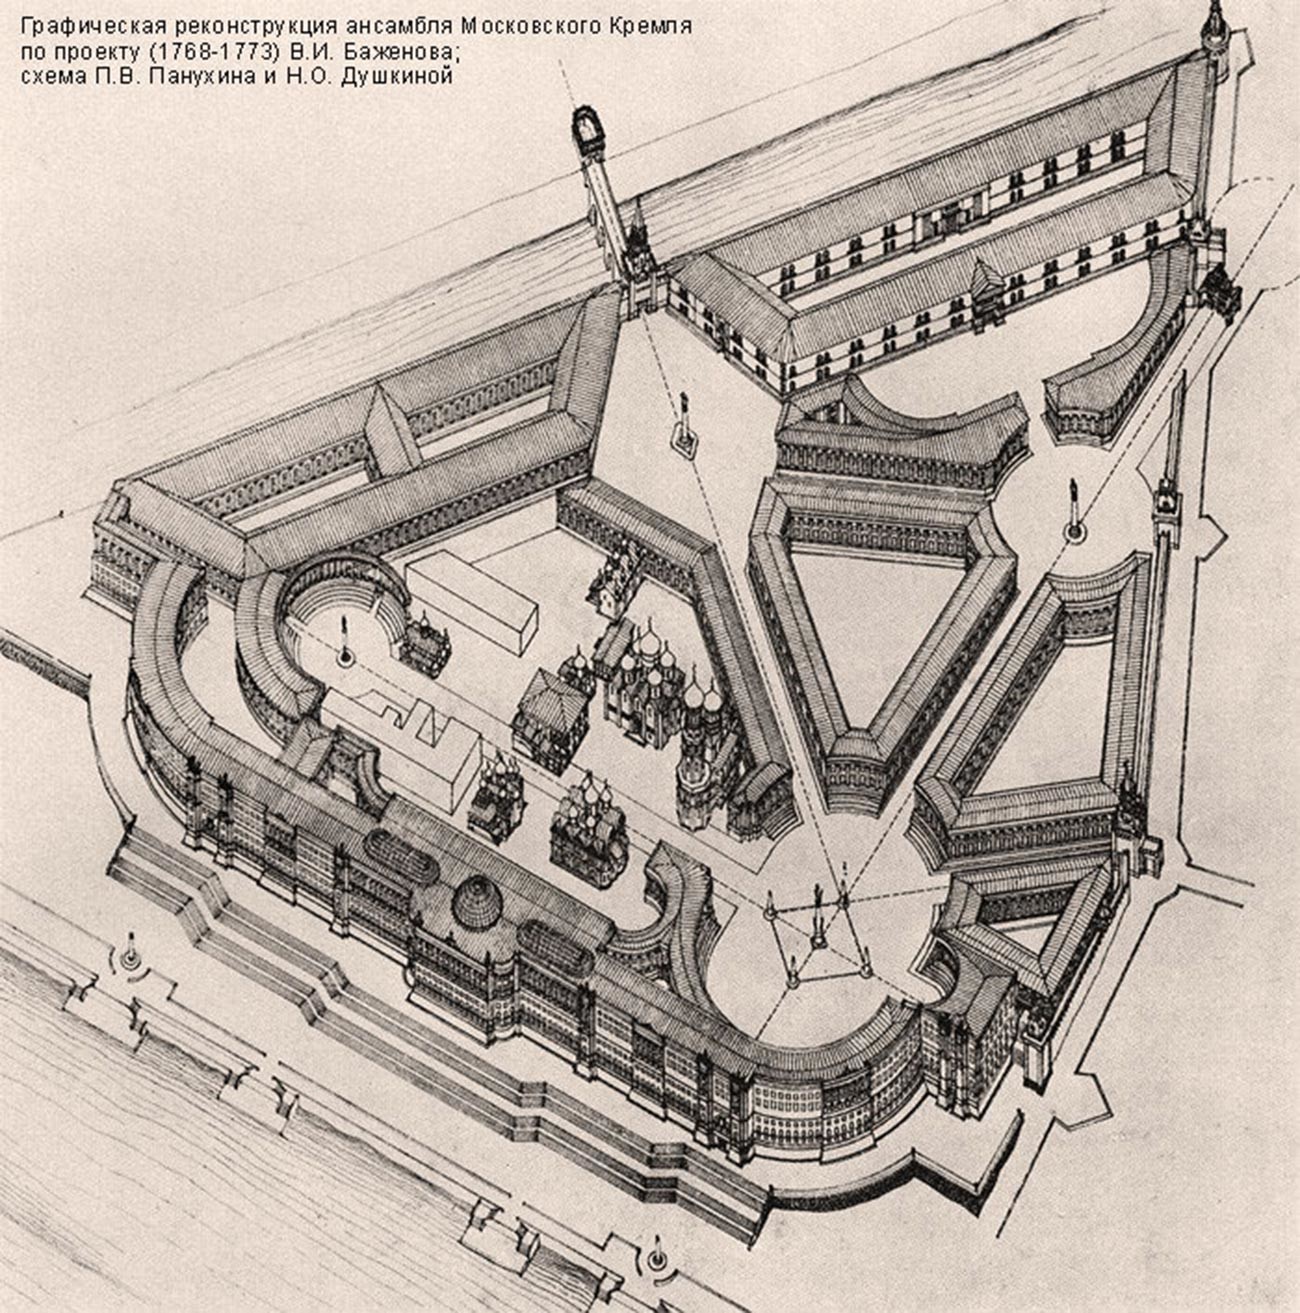 Ricostruzione grafica del complesso del Cremlino di Mosca realizzata nel 1921 su progetto di Vasilij Bazhenov